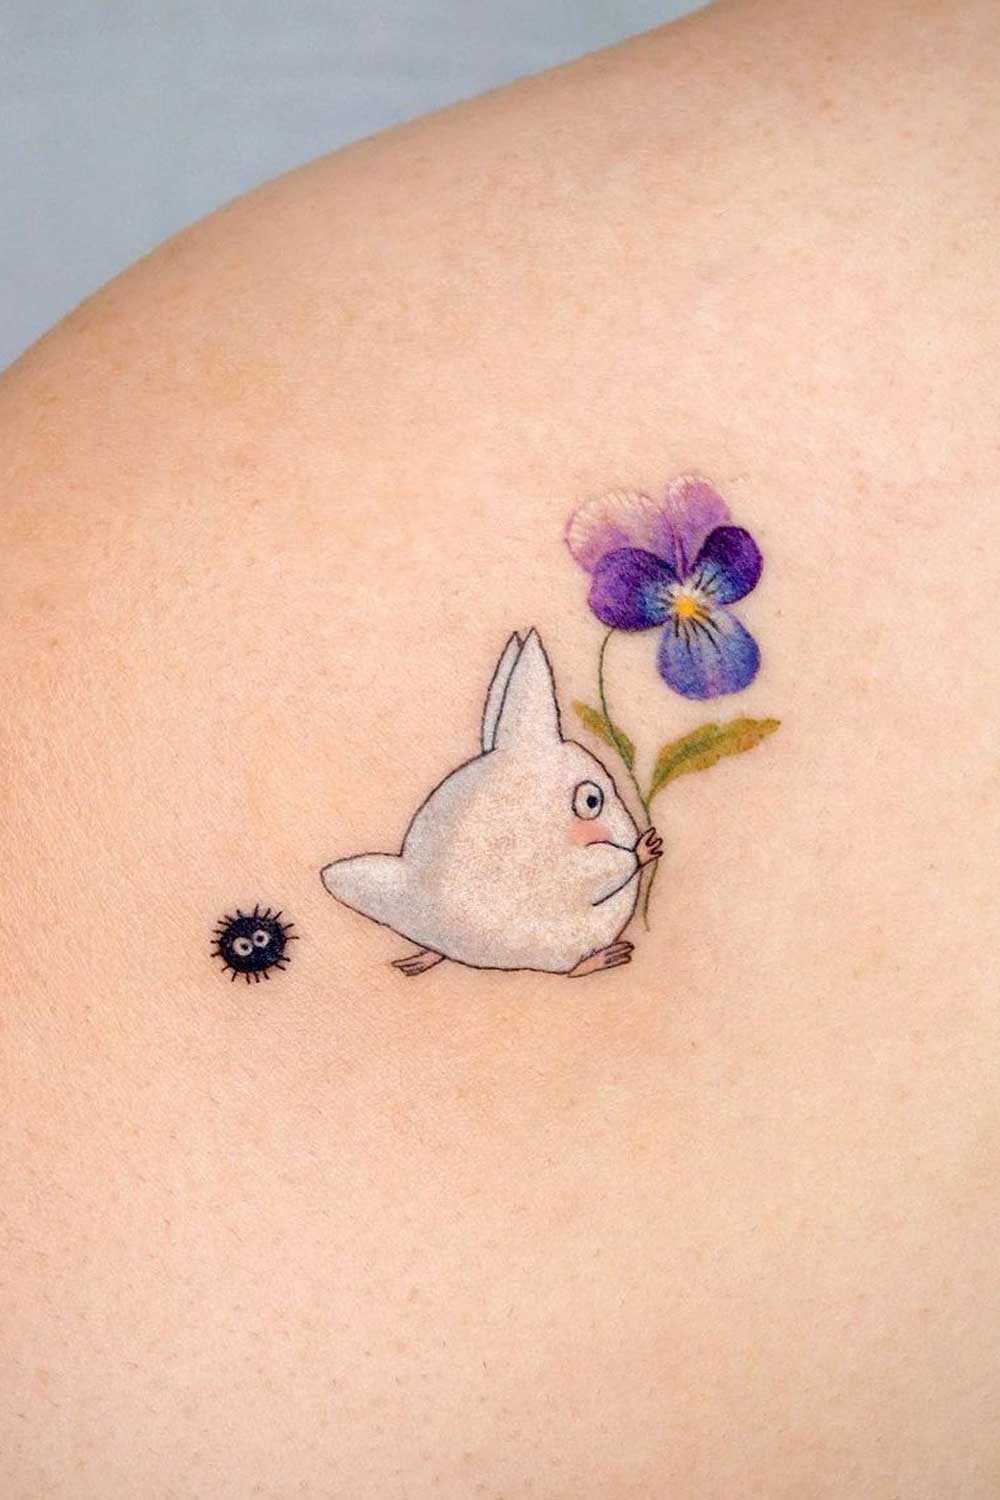 My Neighbor Totoro Tattoo Ideas